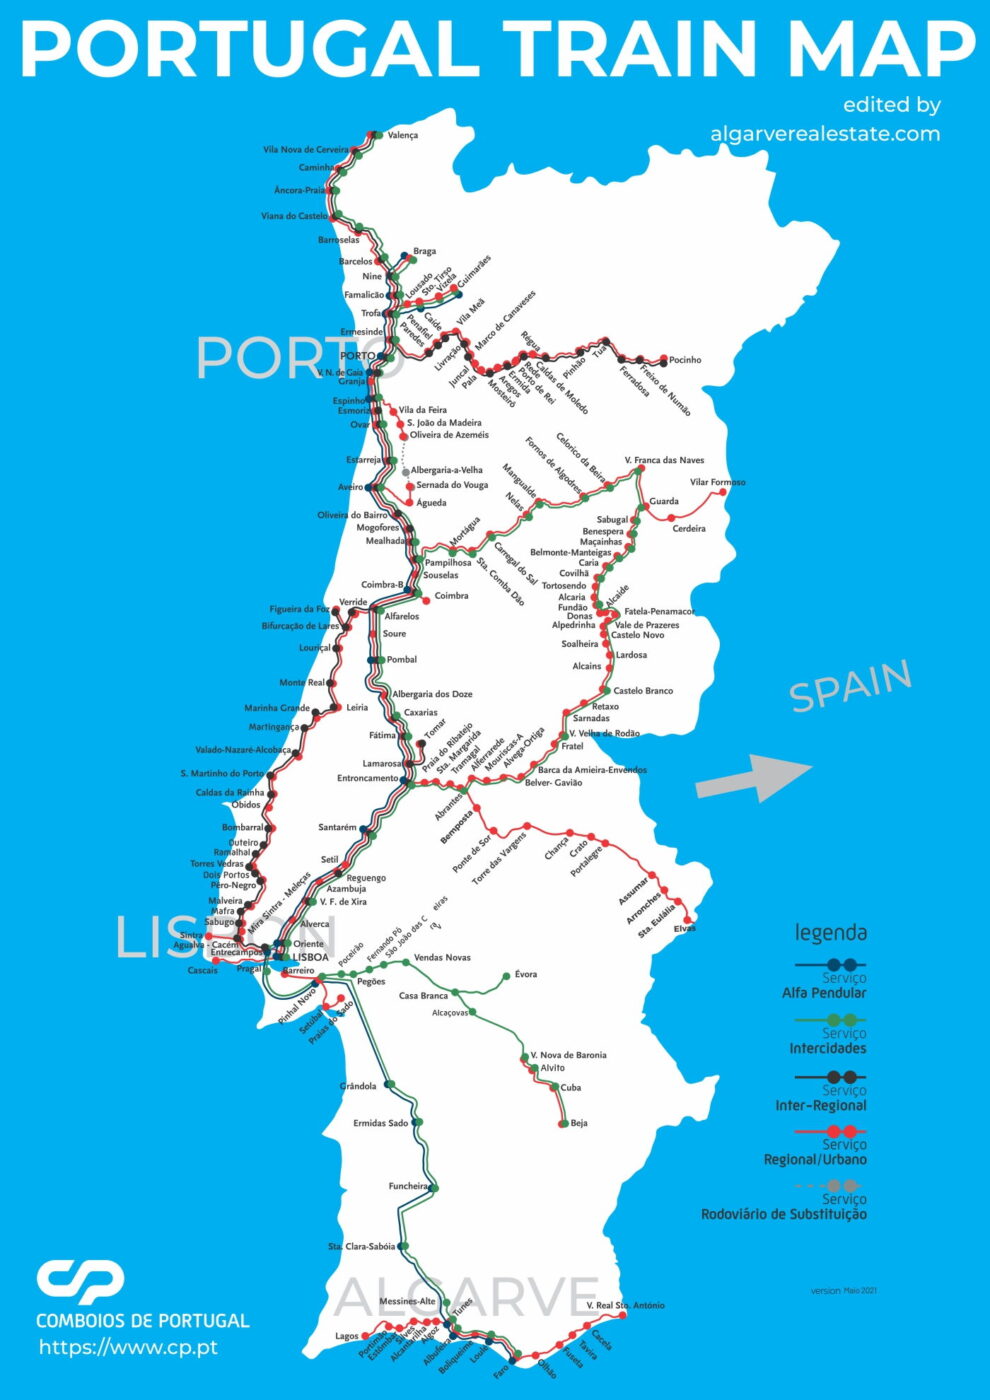 Mapa de Portugal que muestra las líneas de tren, con diferentes colores que representan los distintos tipos de servicios ferroviarios, incluidos trenes rápidos, trenes regionales y trenes interurbanos.